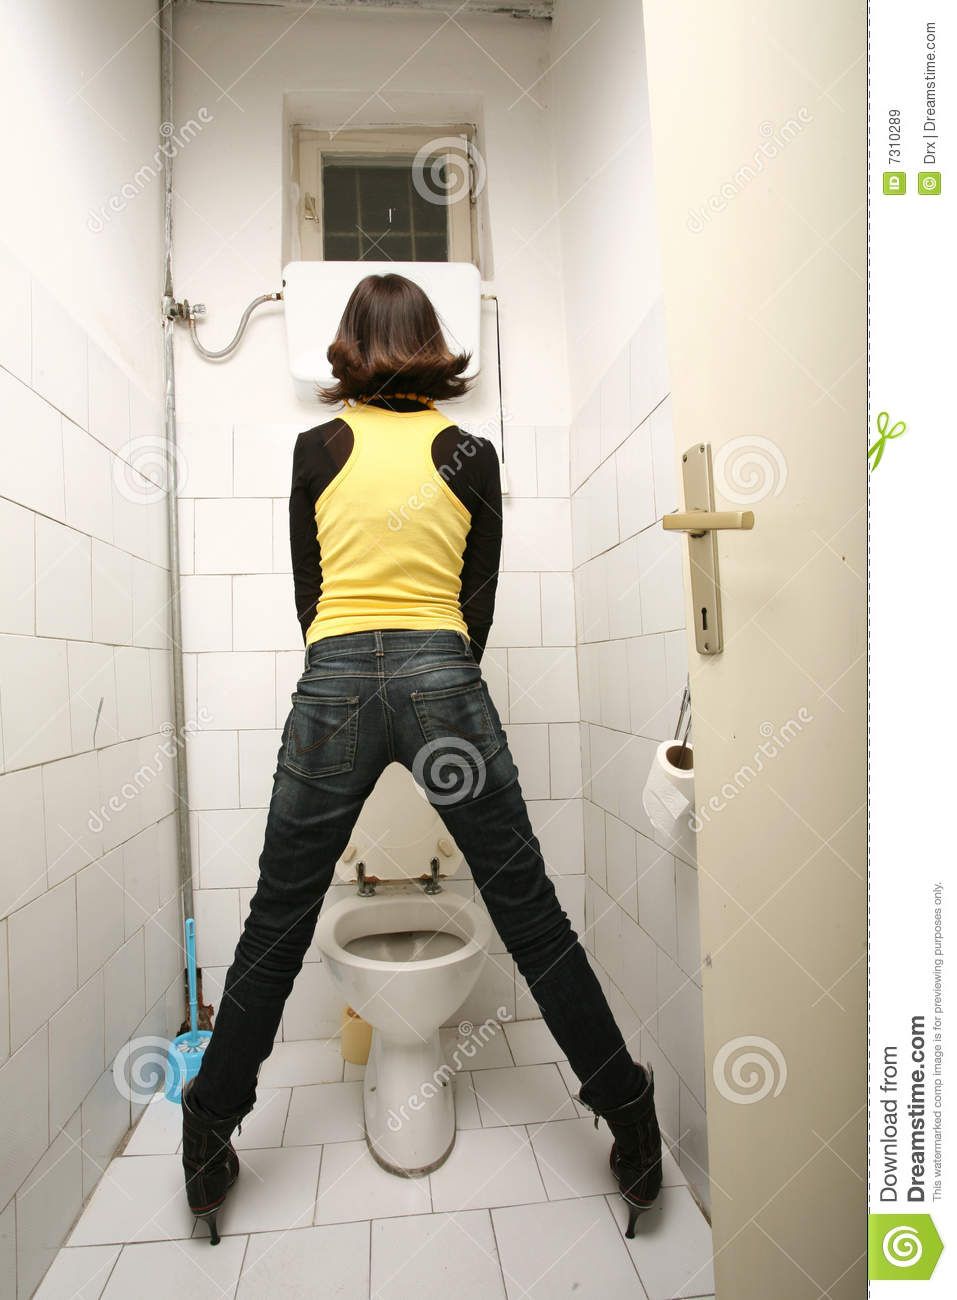 Toilet peeing womens bathroom